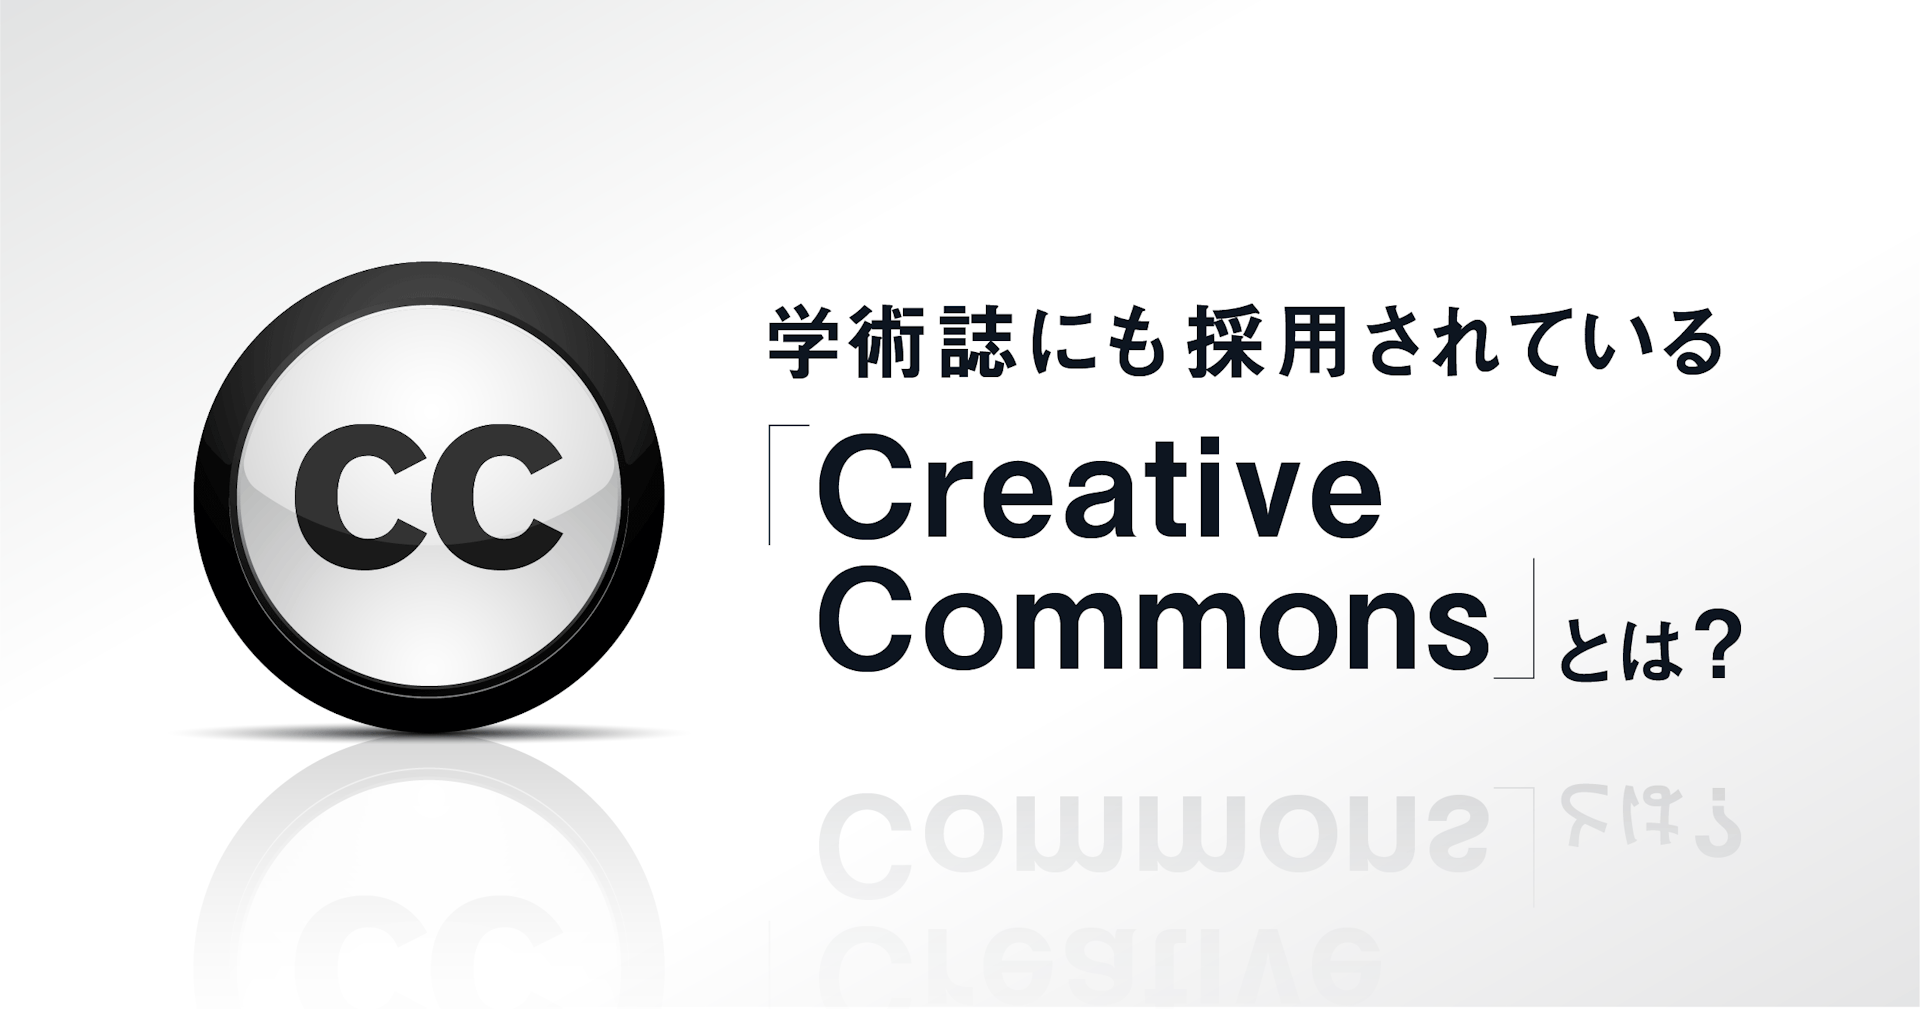 学術誌にも採用されている「Creative Commons」とは